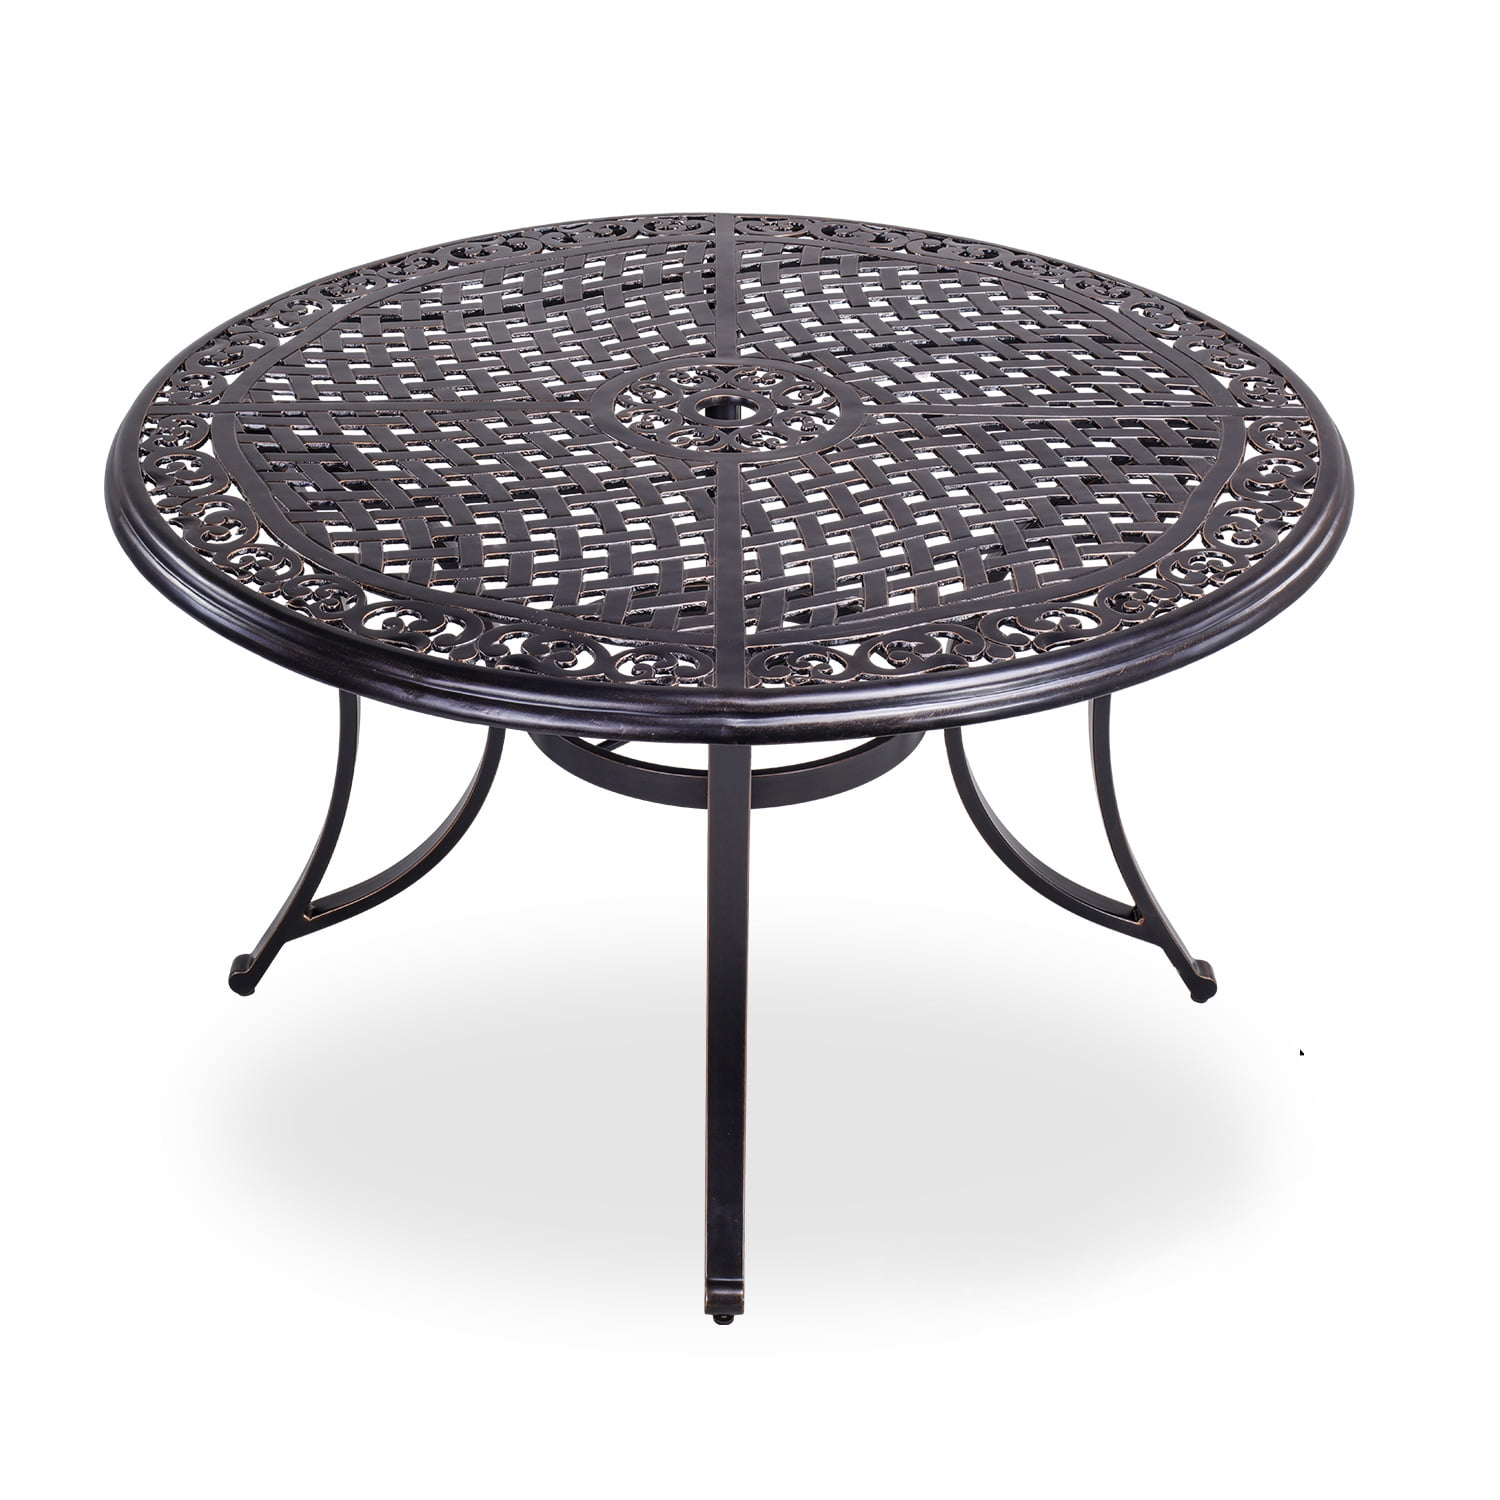 Outdoor Patio Table With Umbrella Hole - Mf Studio Patio Umbrella Side ...